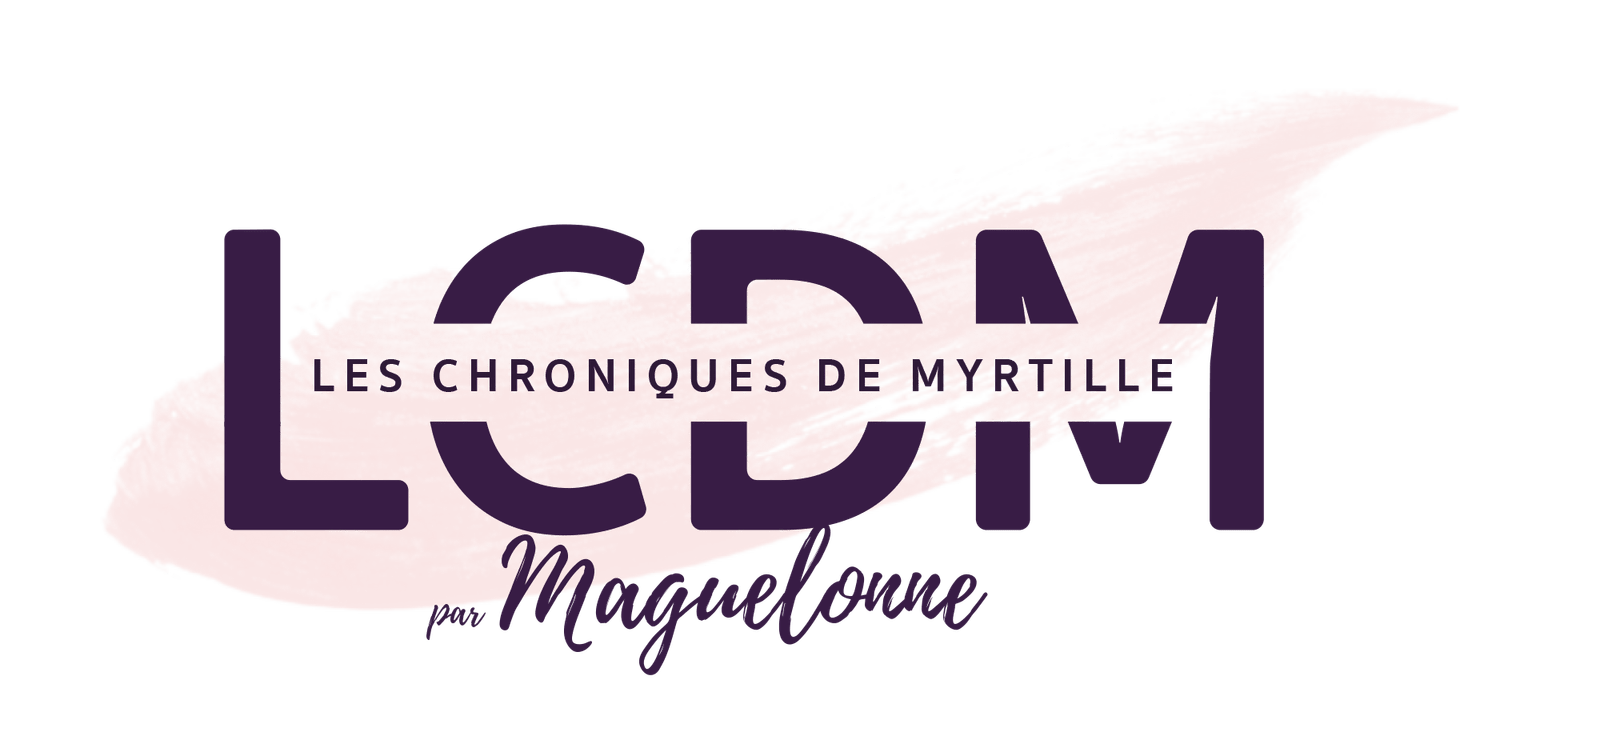 (c) Les-chroniques-de-myrtille.fr